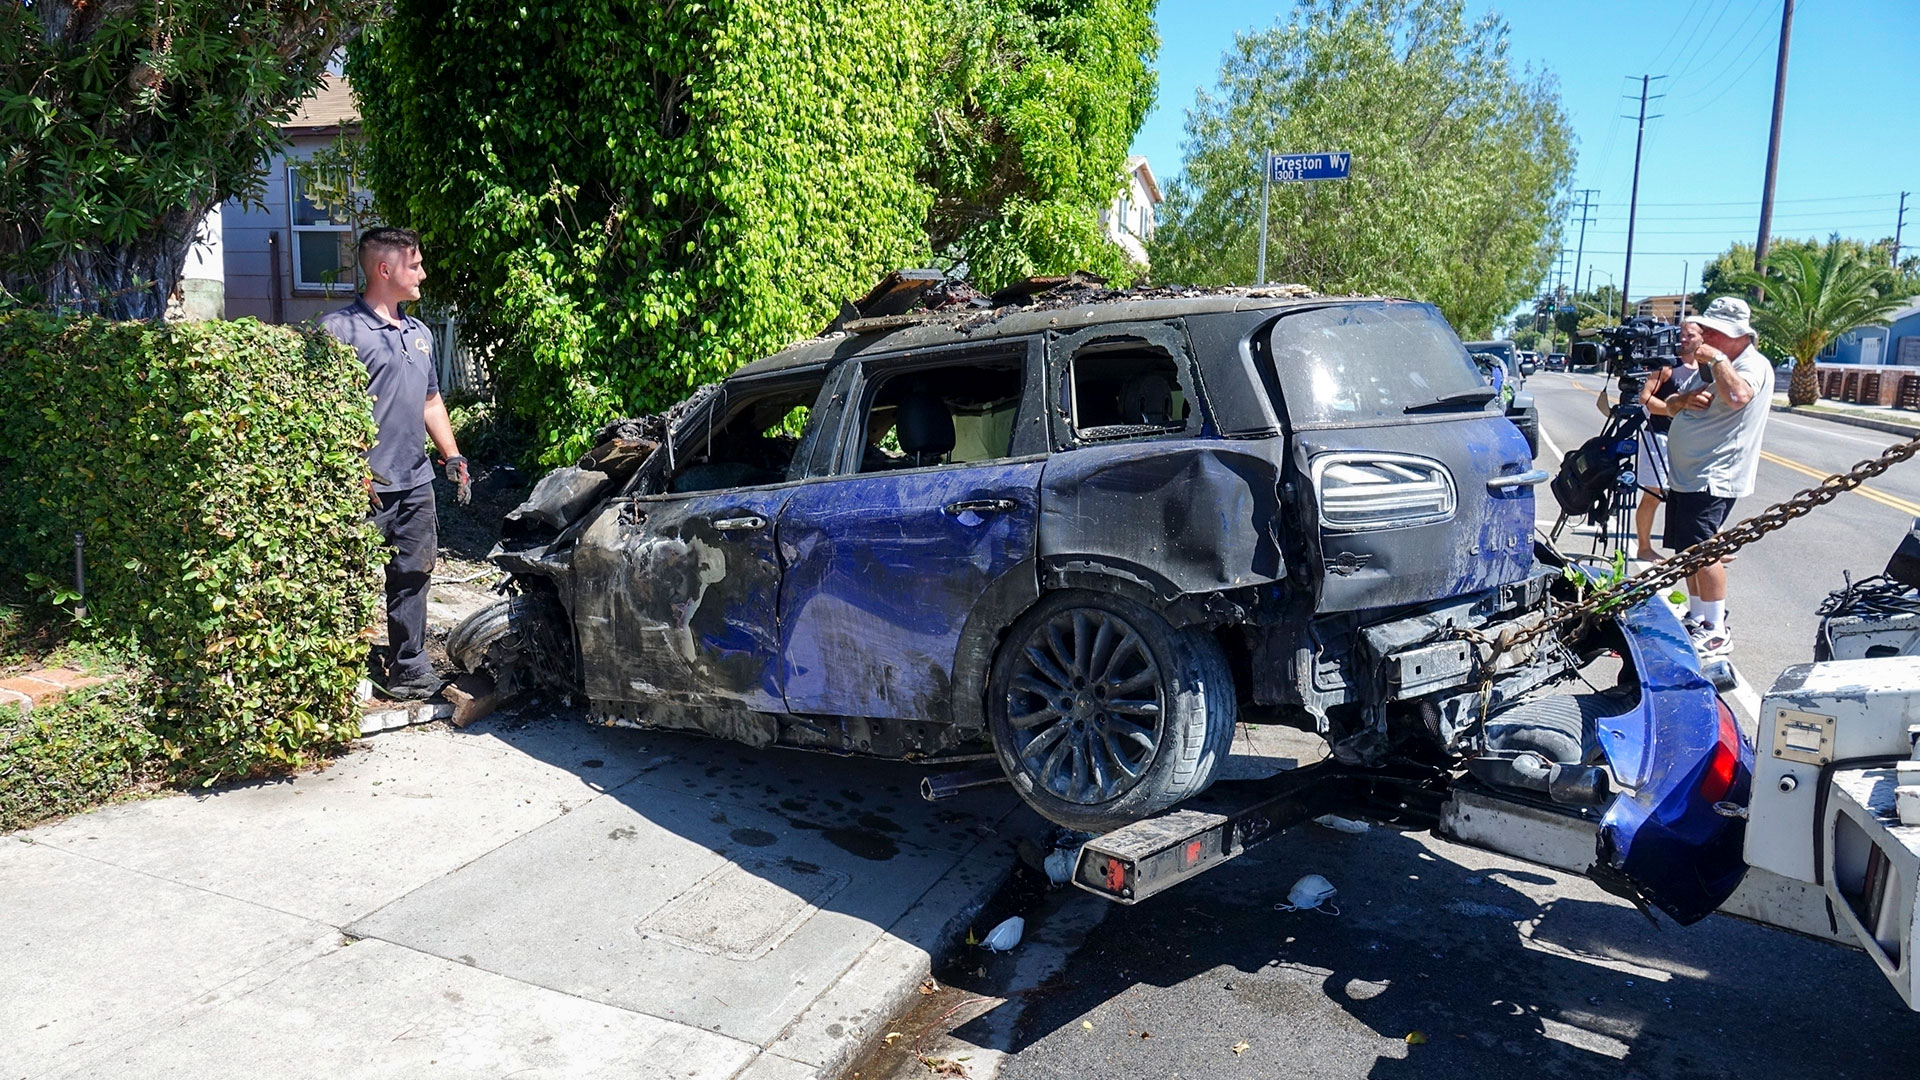 H wurde am Freitag, dem 5. August, in das West Hills Hospital in Los Angeles eingeliefert, nachdem sein blauer Mini Cooper in ein Haus in der Gegend von Mar Vista gekracht war, wodurch das Fahrzeug in Flammen aufging.